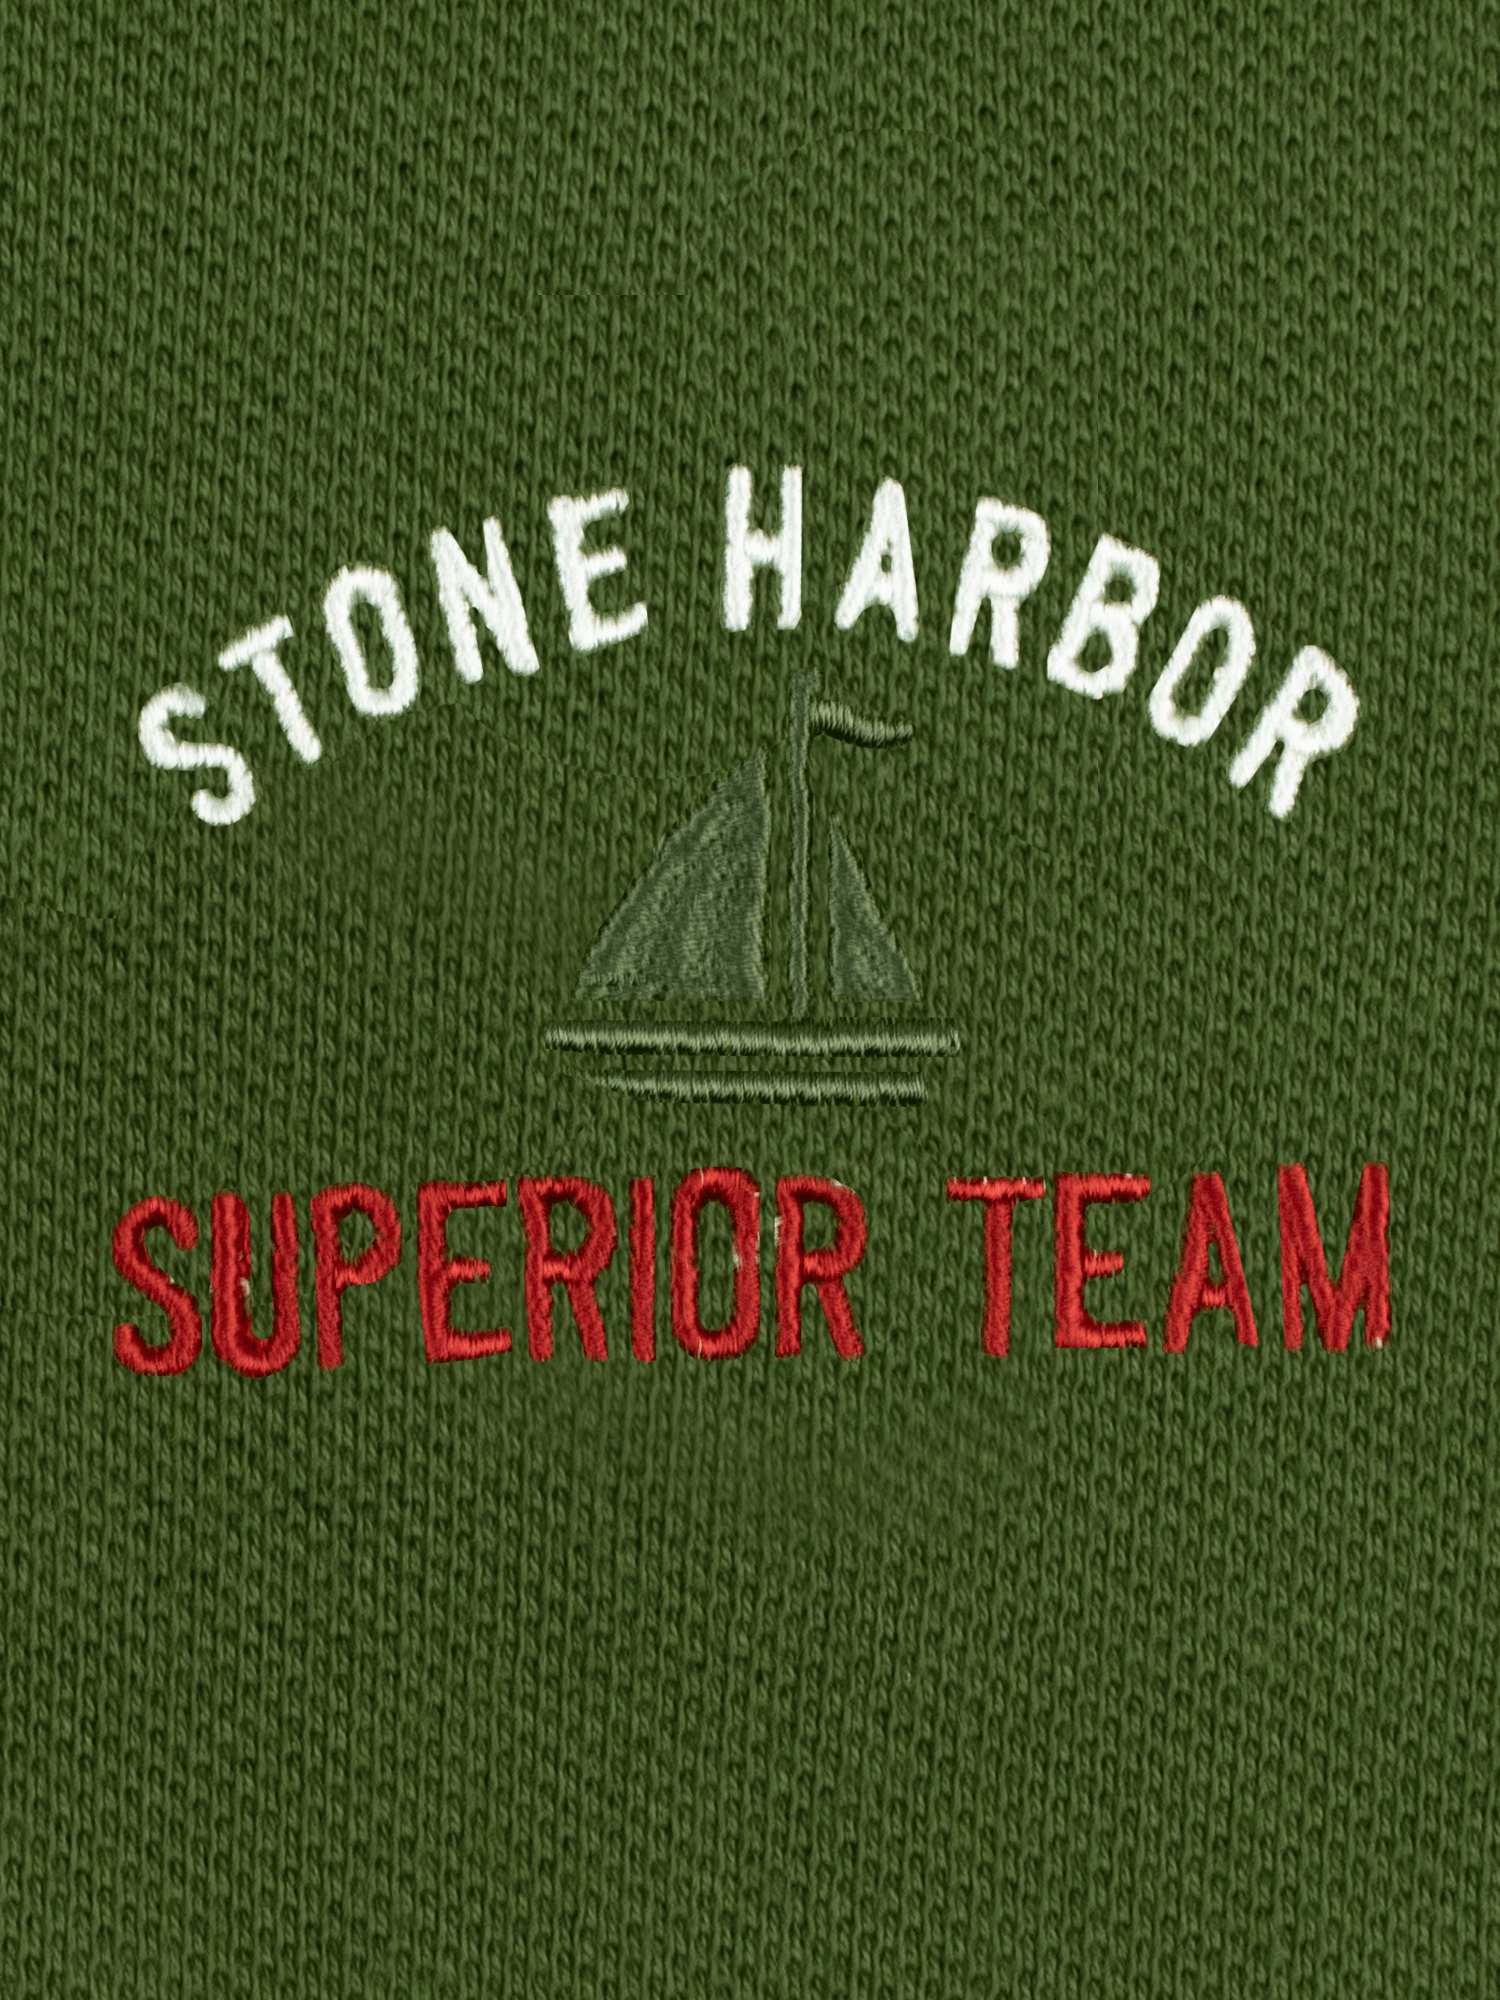 Stone Harbor MEN'S PREMIUM SUPERIOR TEAM POLO